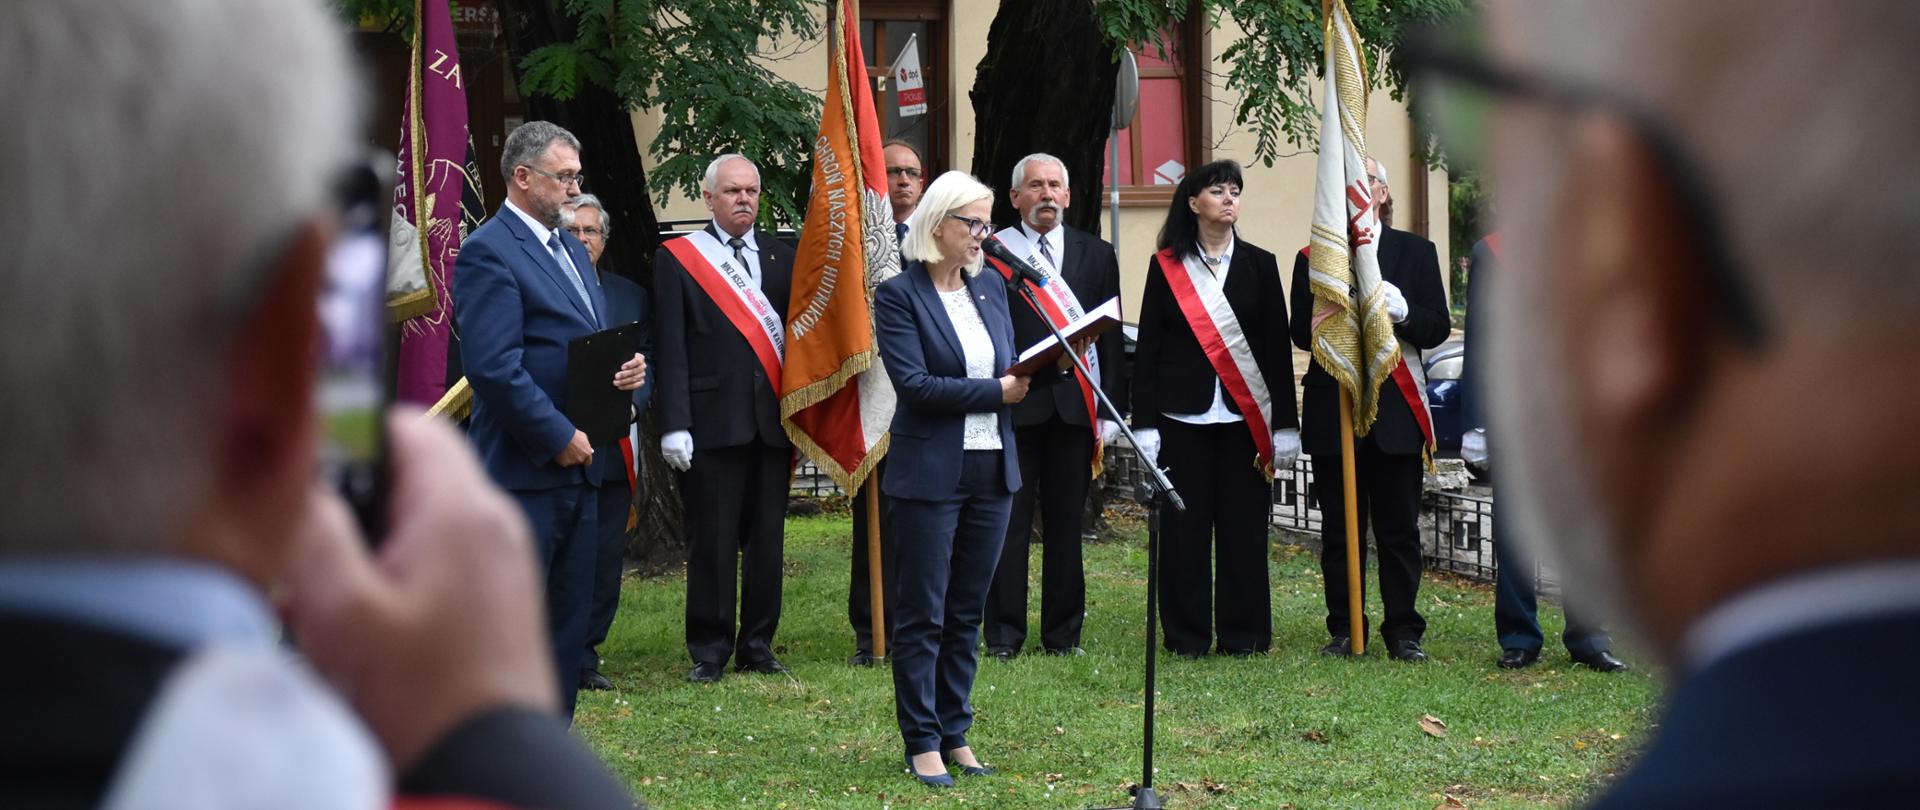 Obchody 39-lecia powstania NSZZ "Solidarność" w rocznicę pierwszego strajku na Górnym Śląsku w tarnogórskim Fazos-ie